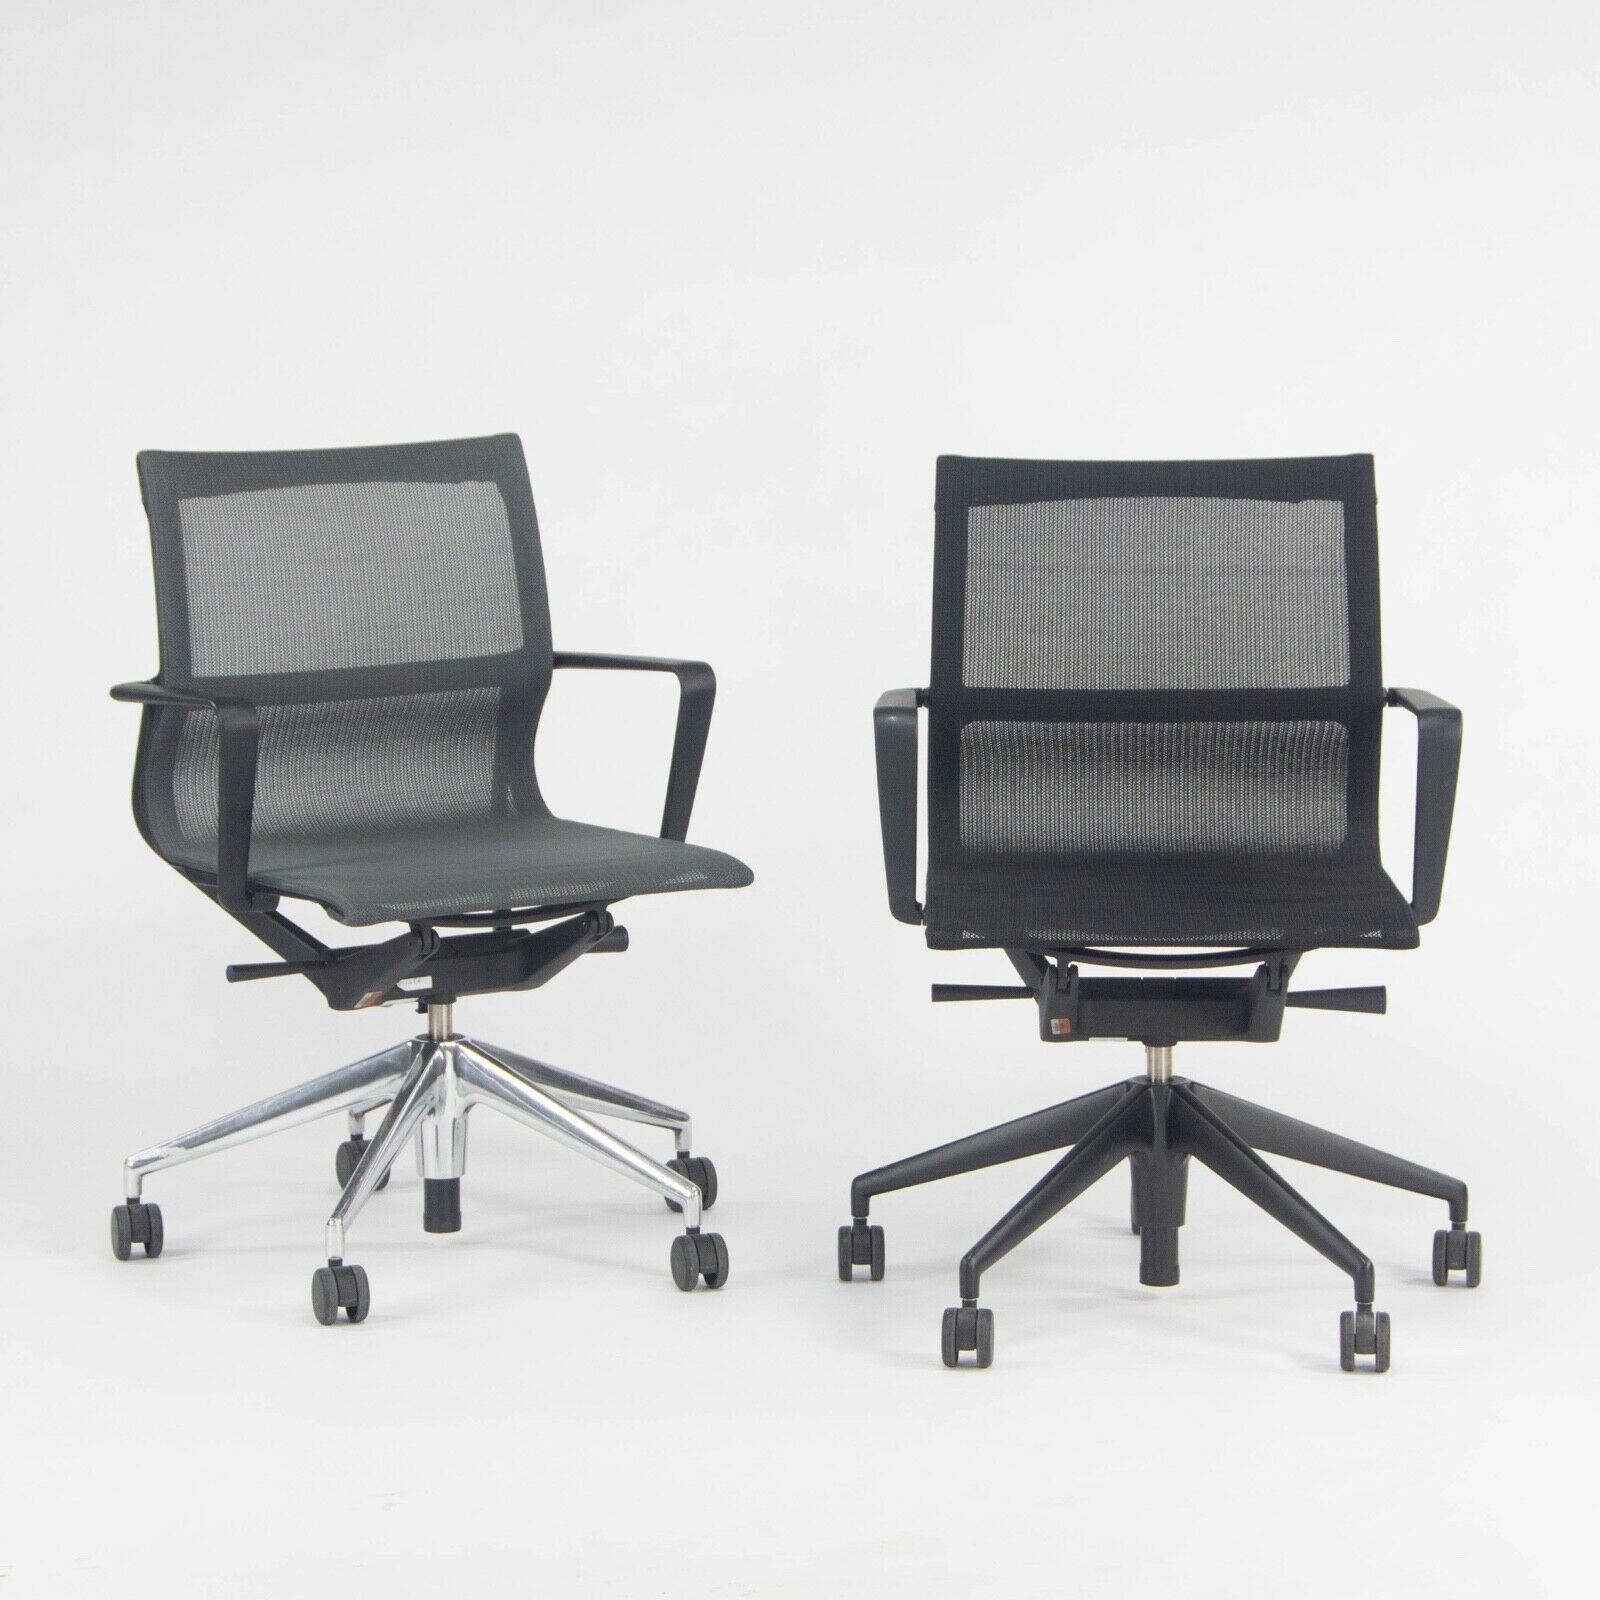 Nous proposons à la vente une seule (1) chaise de bureau roulante Physix, conçue par Alberto Meda et produite par Vitra. Cette pièce a été spécifiée avec une base en aluminium poli et un tissu en maille TrioKnit gris foncé (couleur carbone). Les